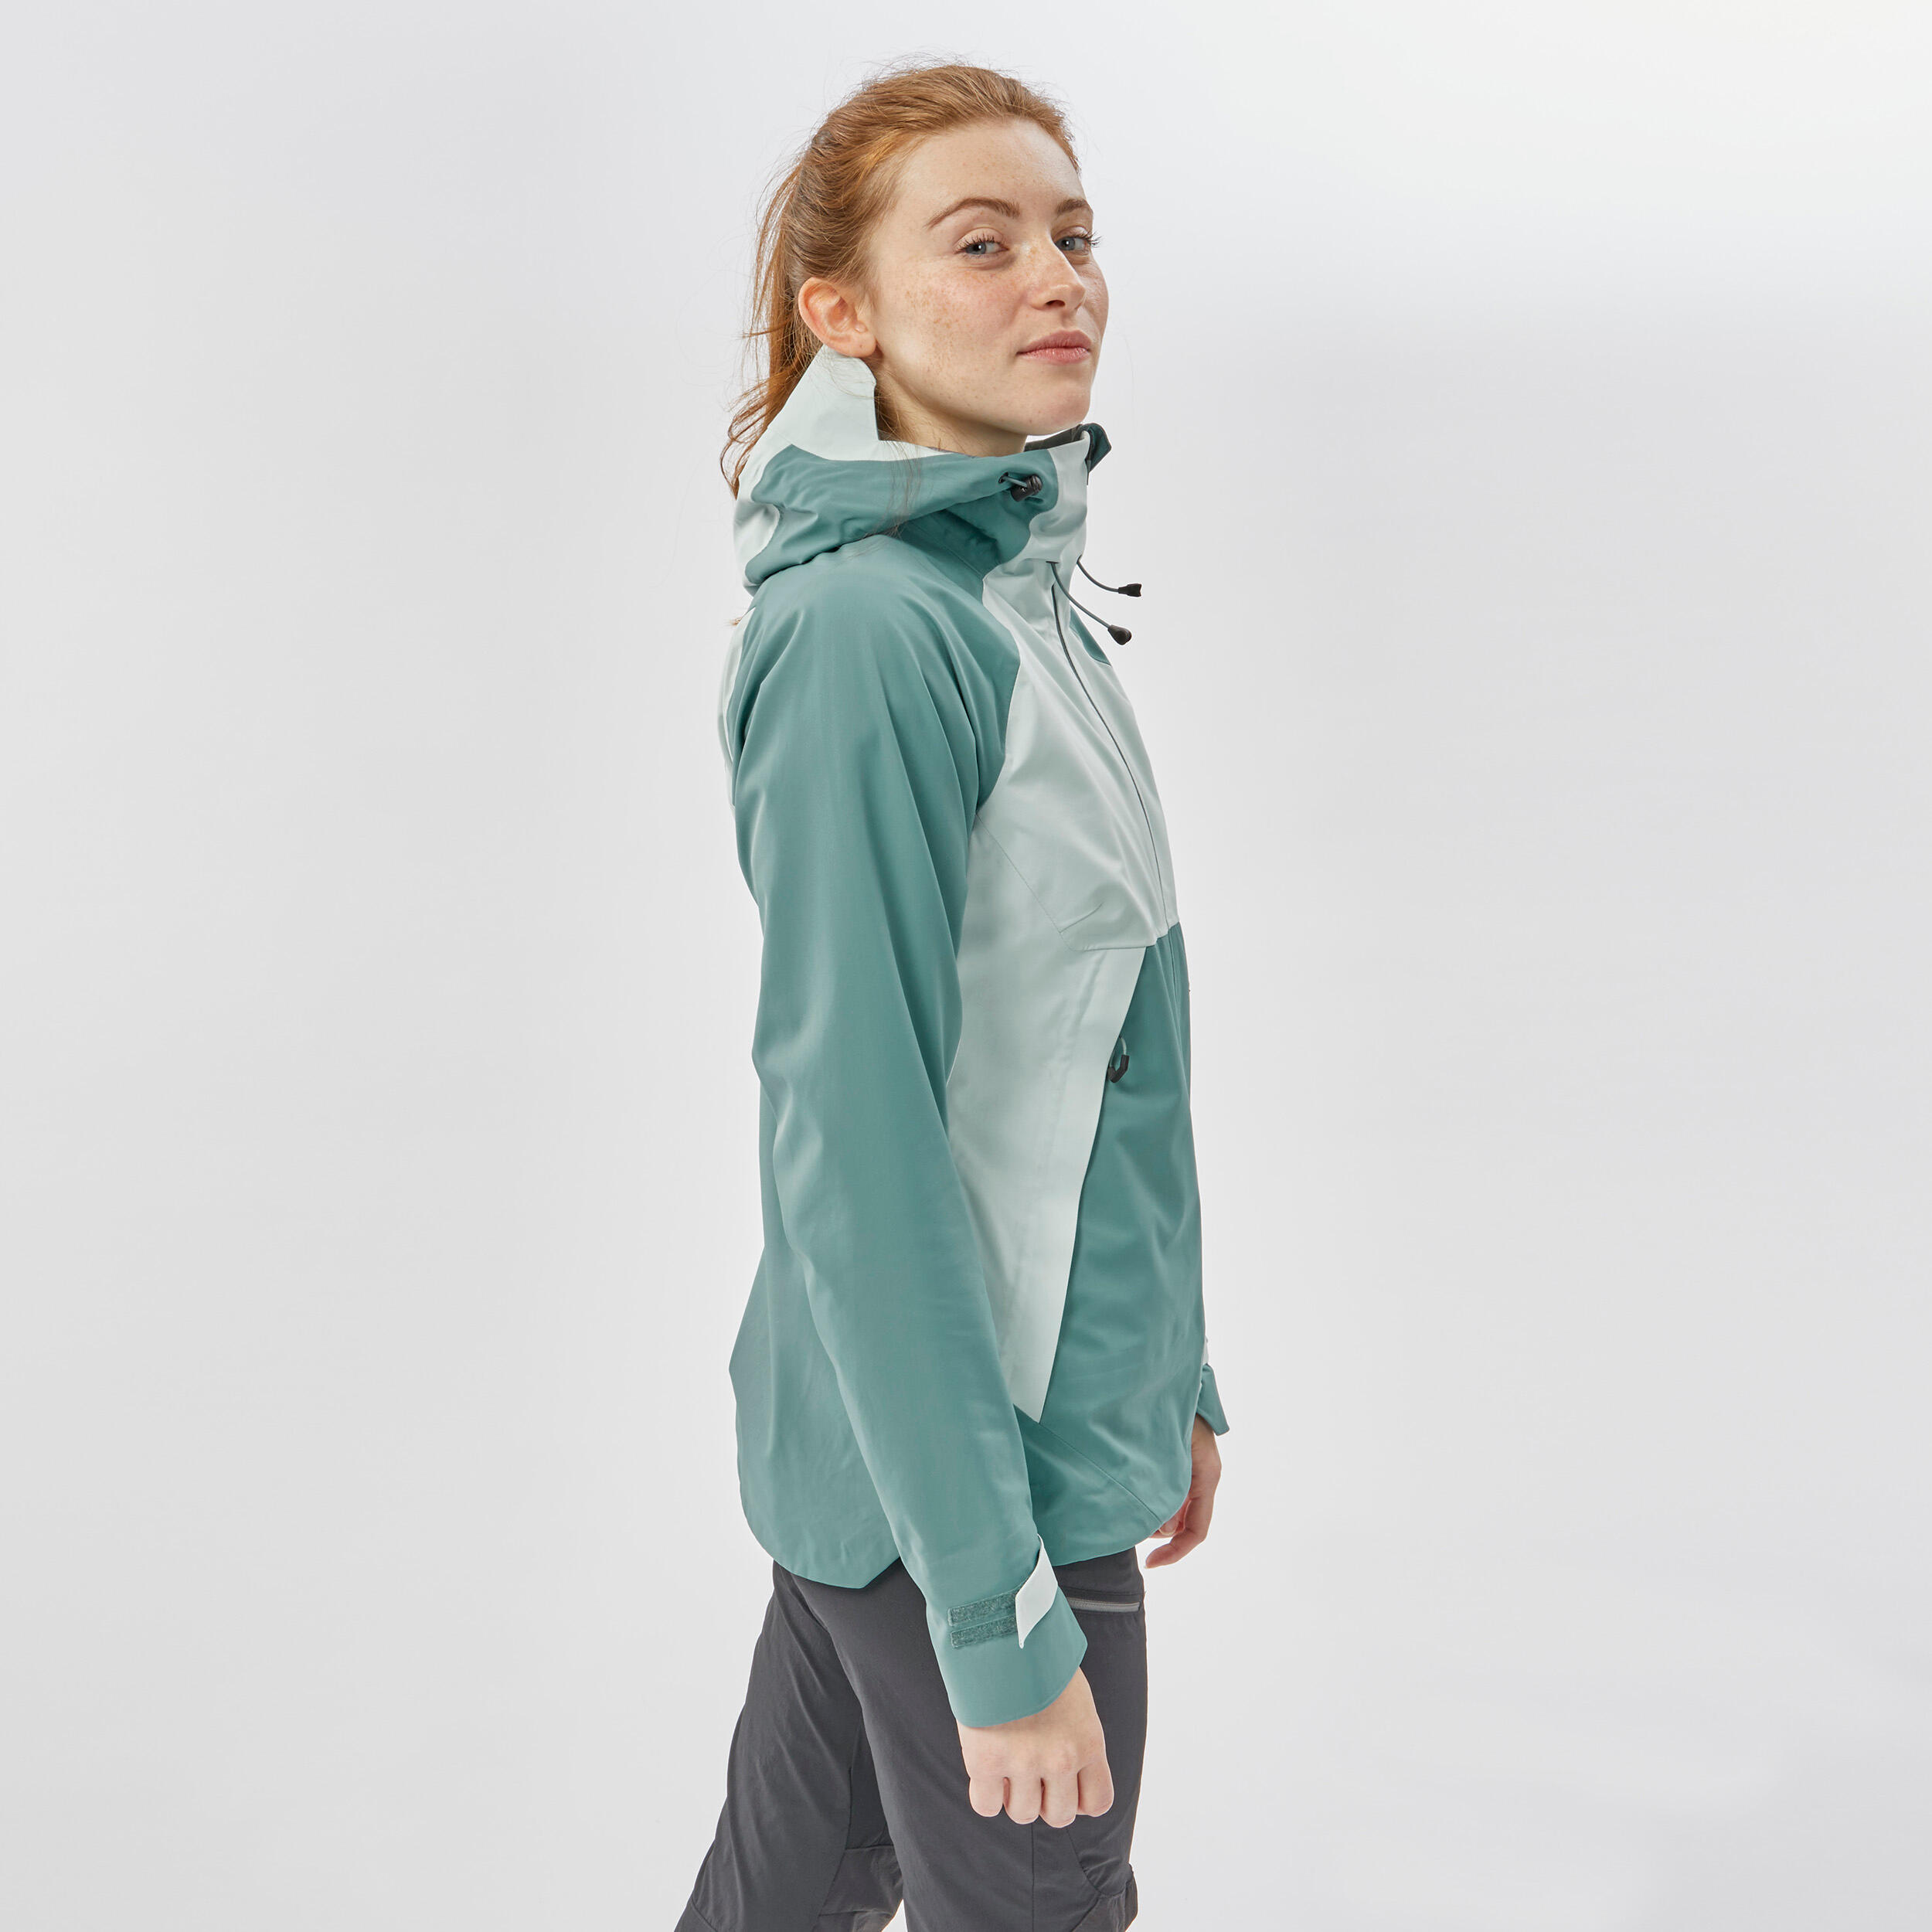 Women’s Waterproof Hiking Jacket - MH 500 Green